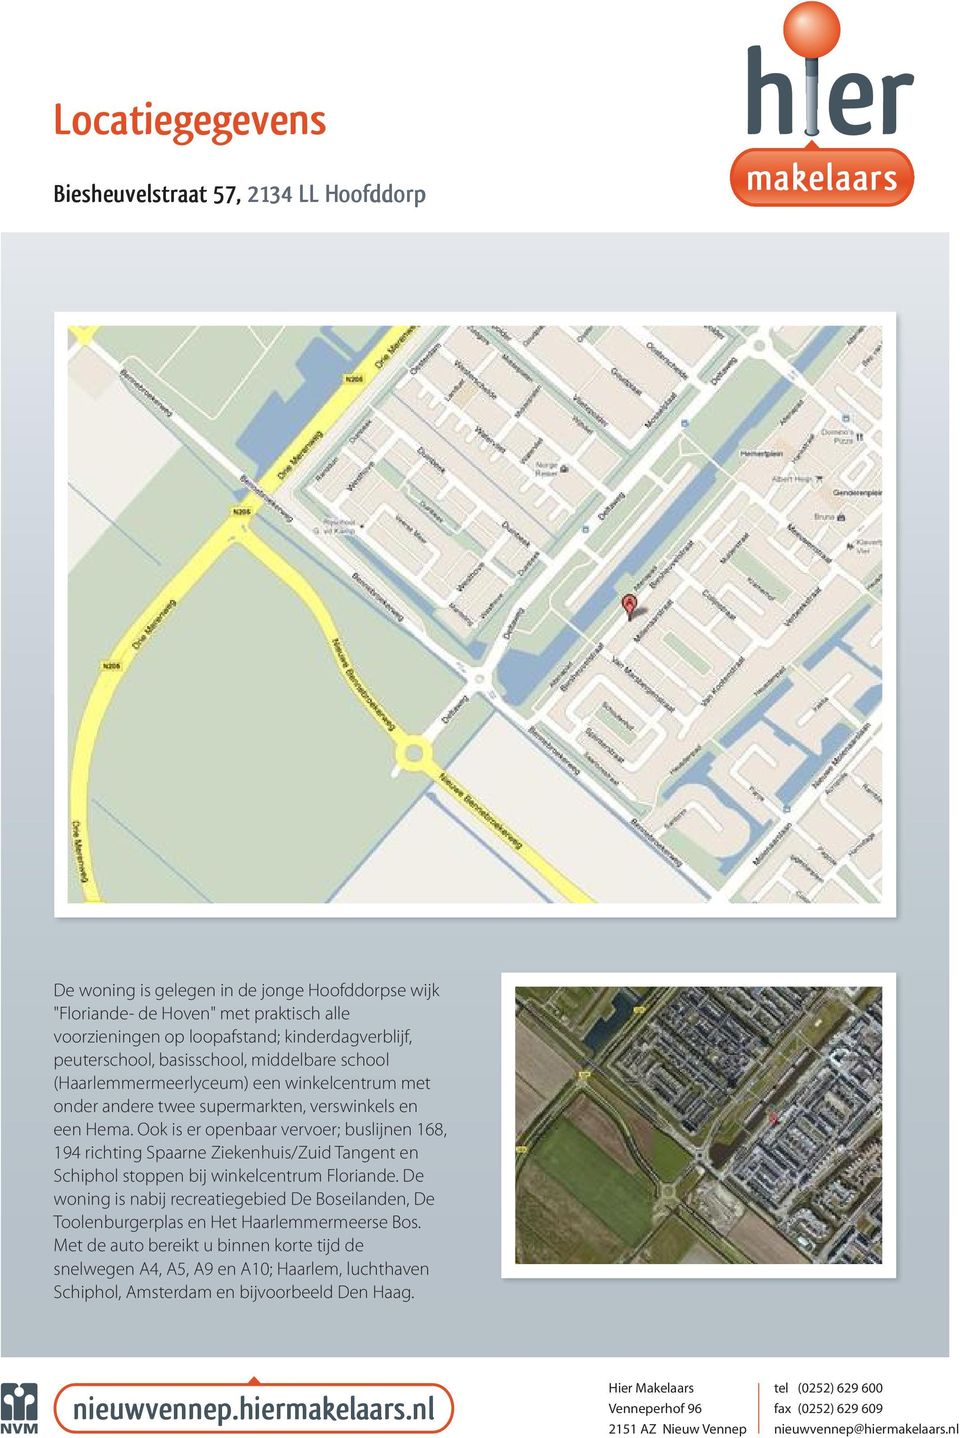 Ook is er openbaar vervoer; buslijnen 168, 194 richting Spaarne Ziekenhuis/Zuid Tangent en Schiphol stoppen bij winkelcentrum Floriande.